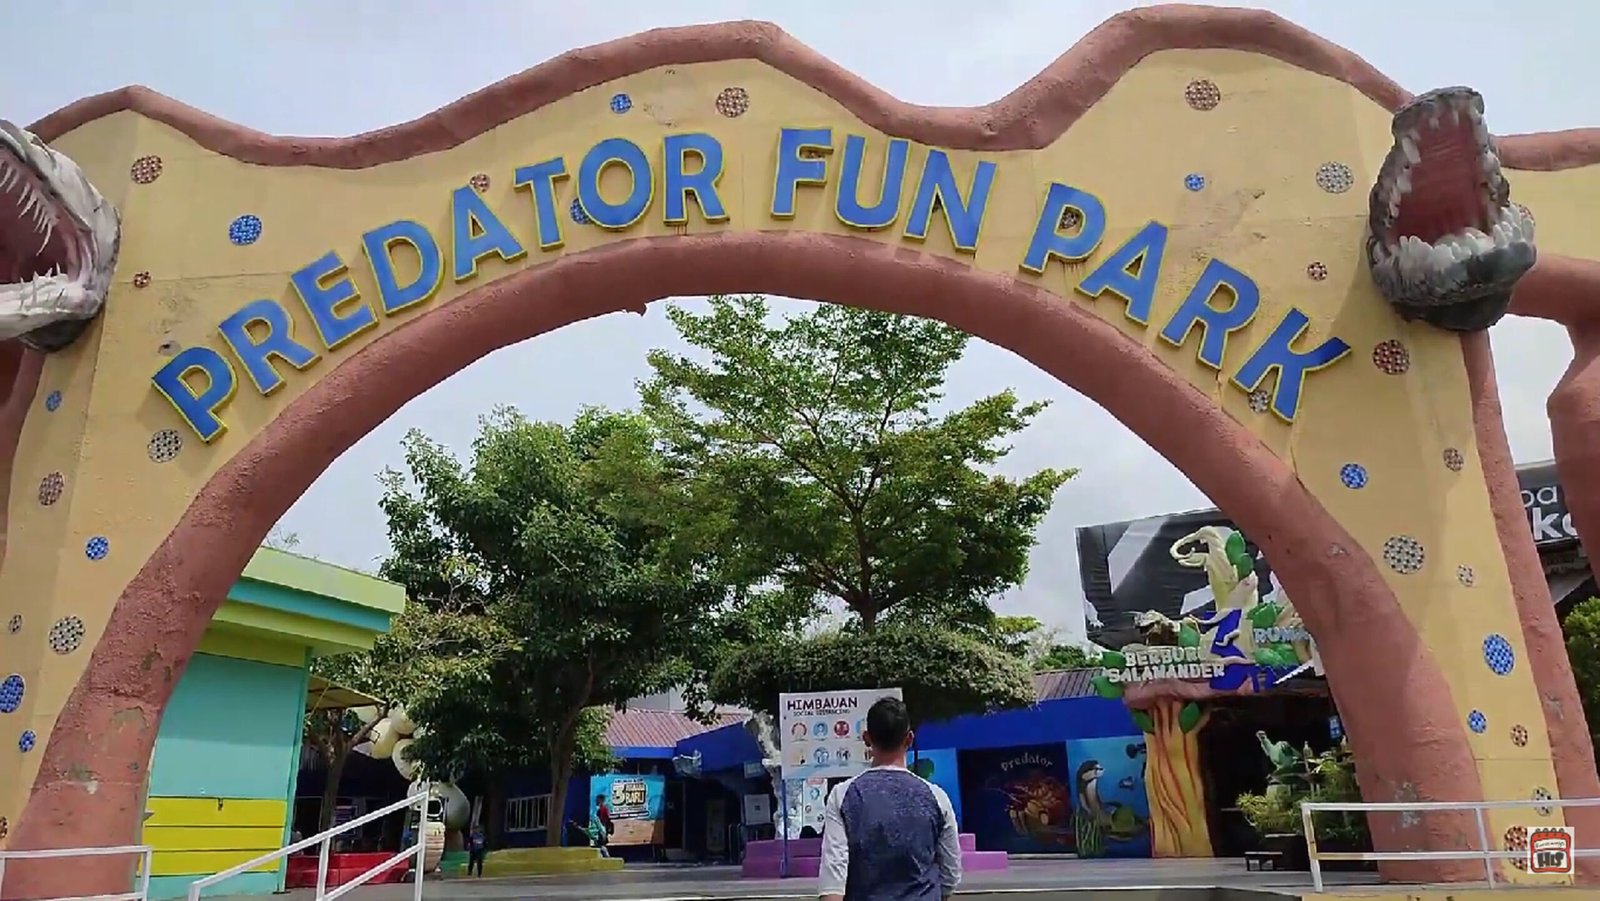 Predator Fun Park: Tempat Wisata di Batu yang Punya Banyak Wahana Seru!